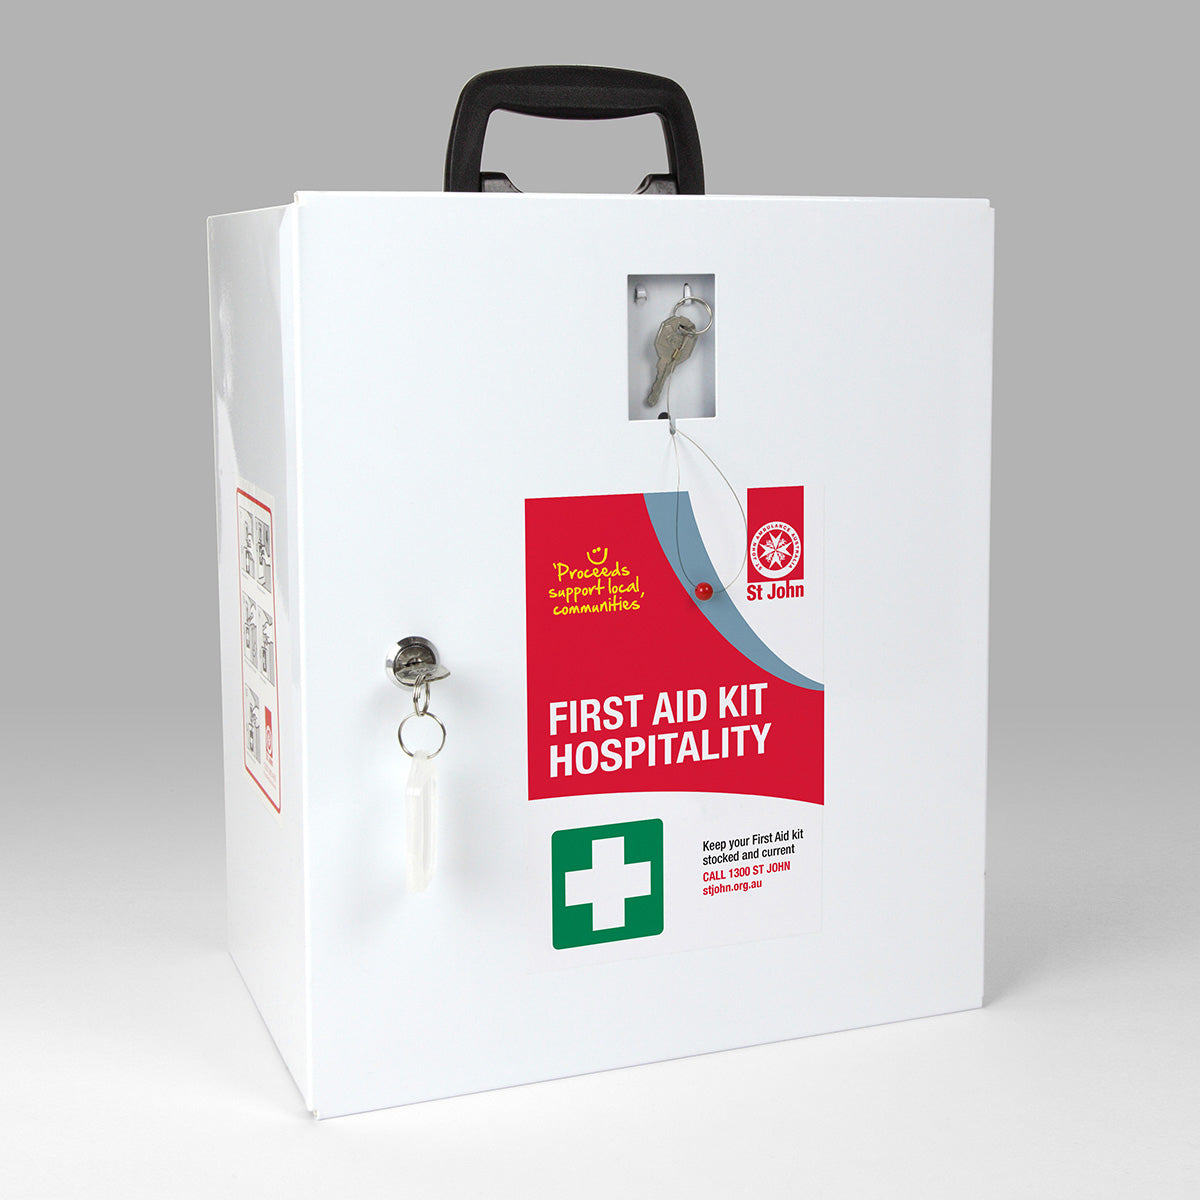 Hospitality First Aid Kits